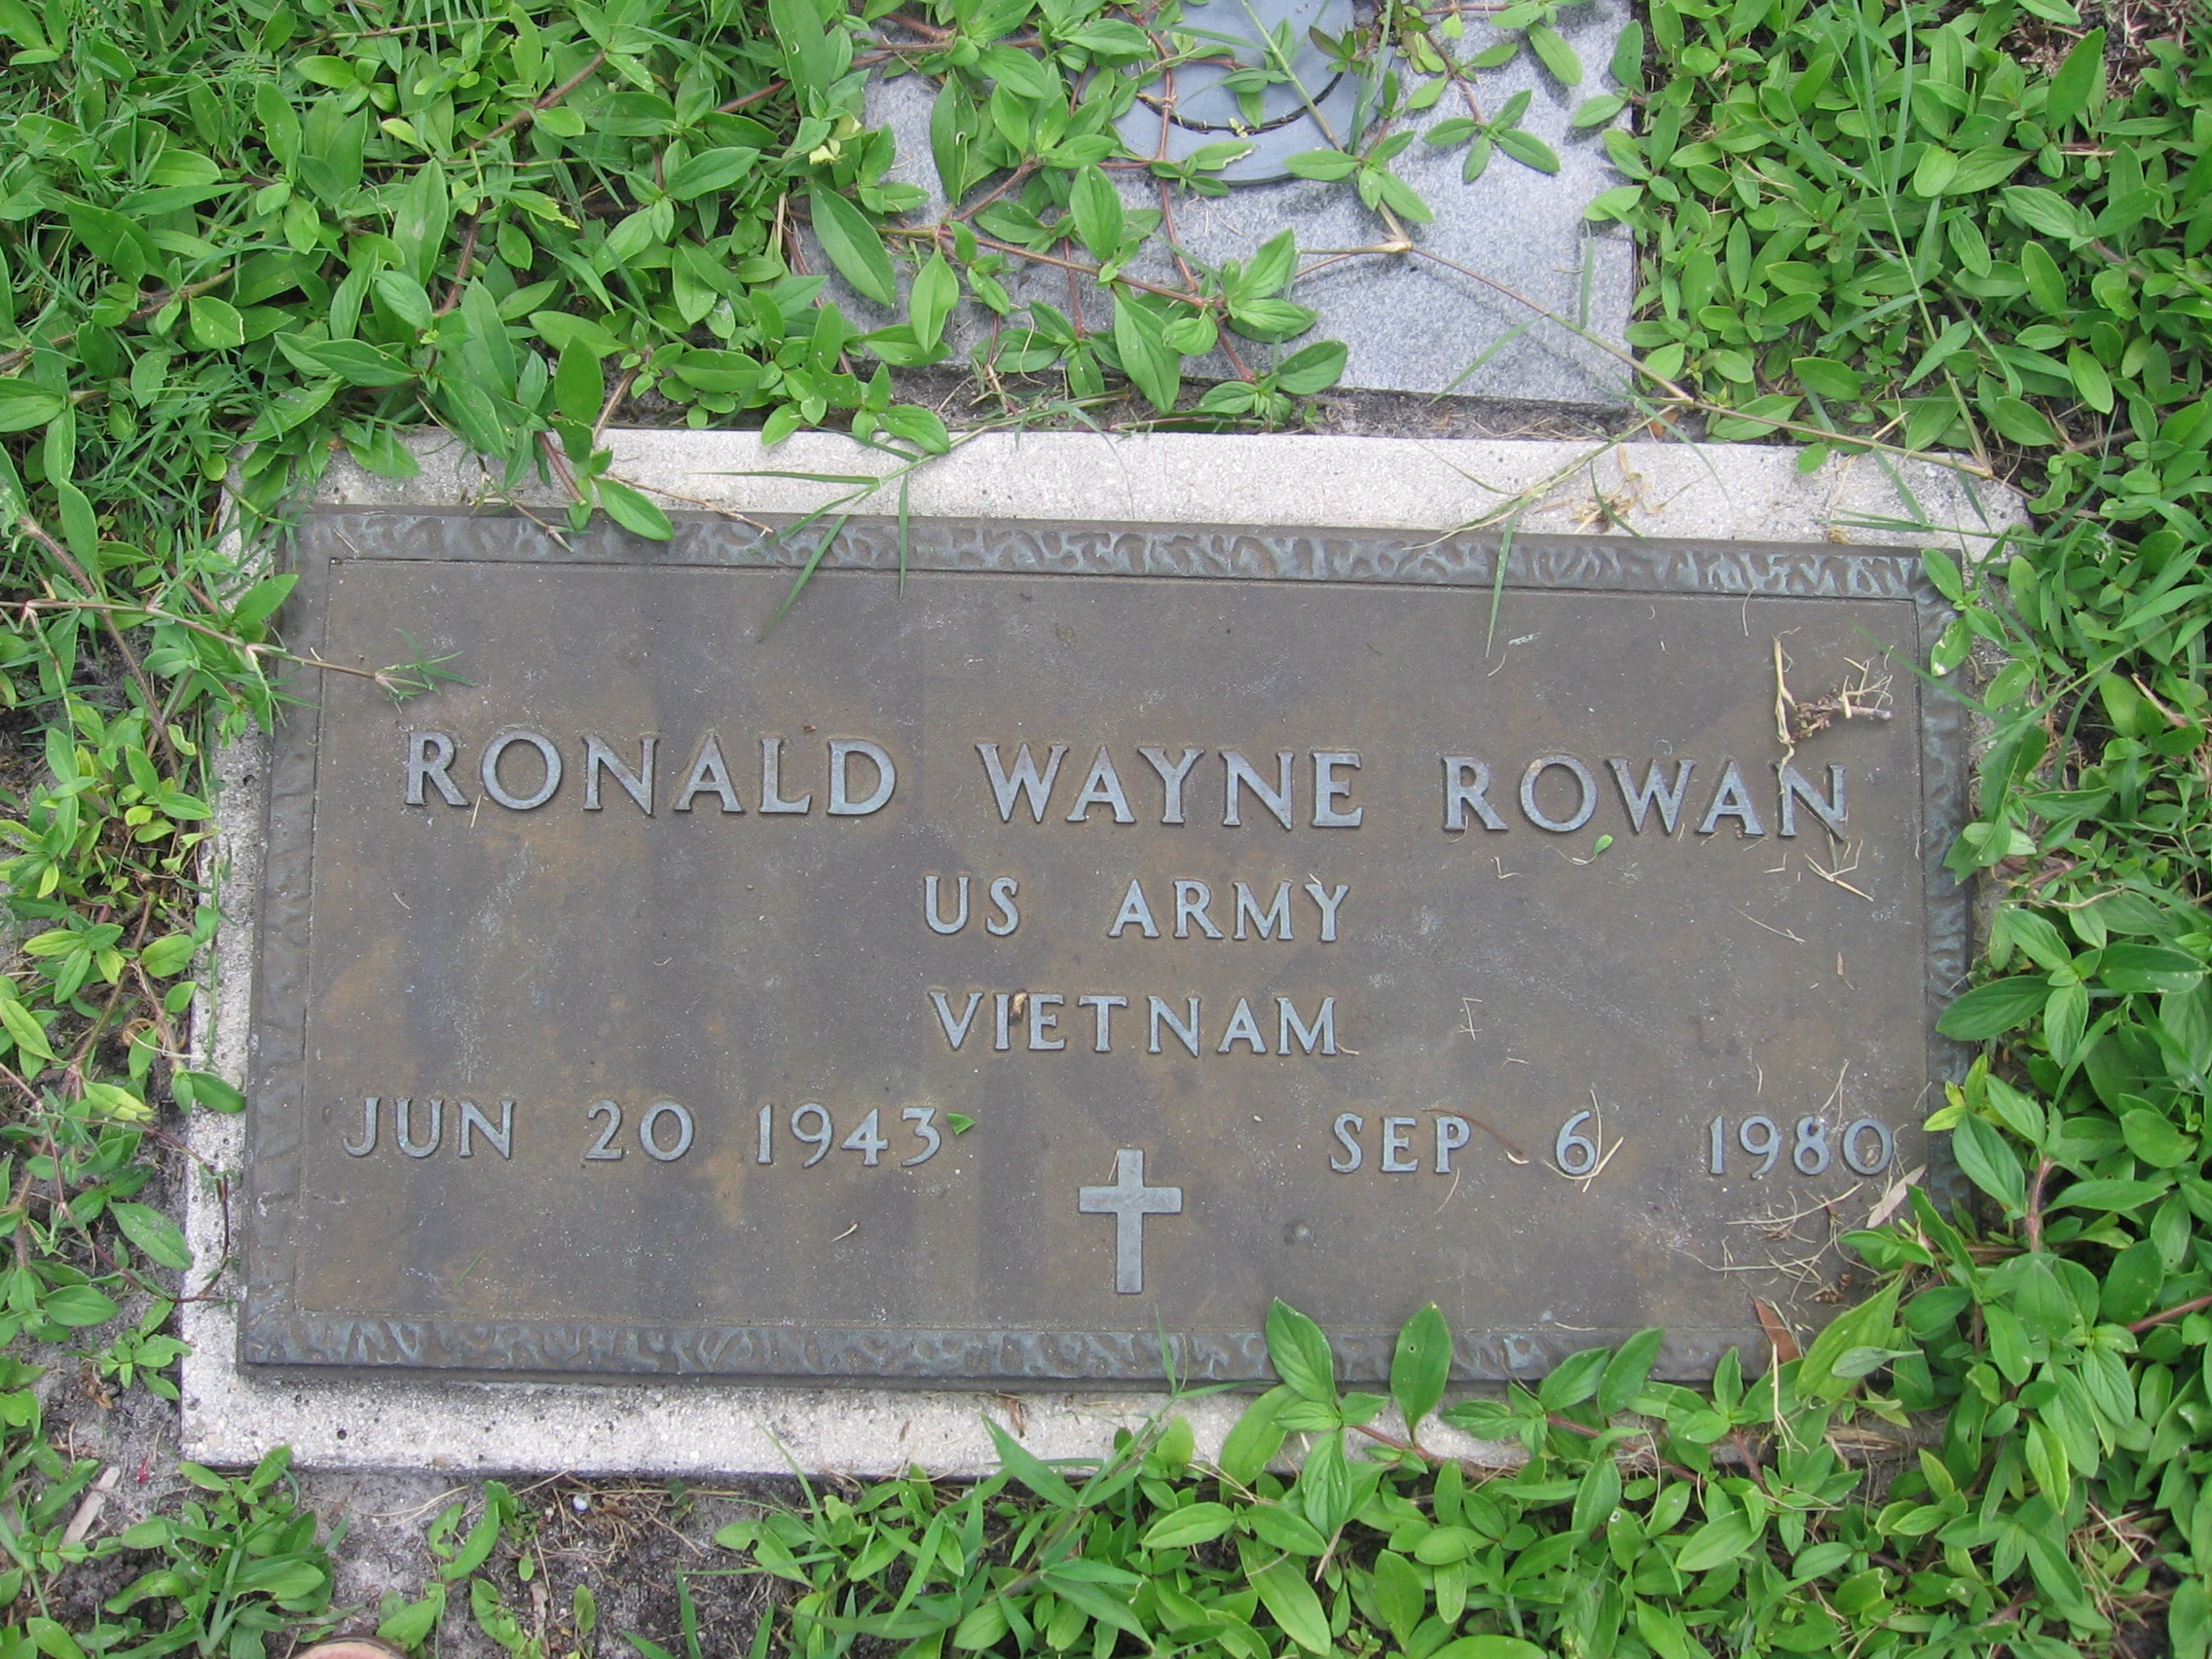 Ronald Wayne Rowan